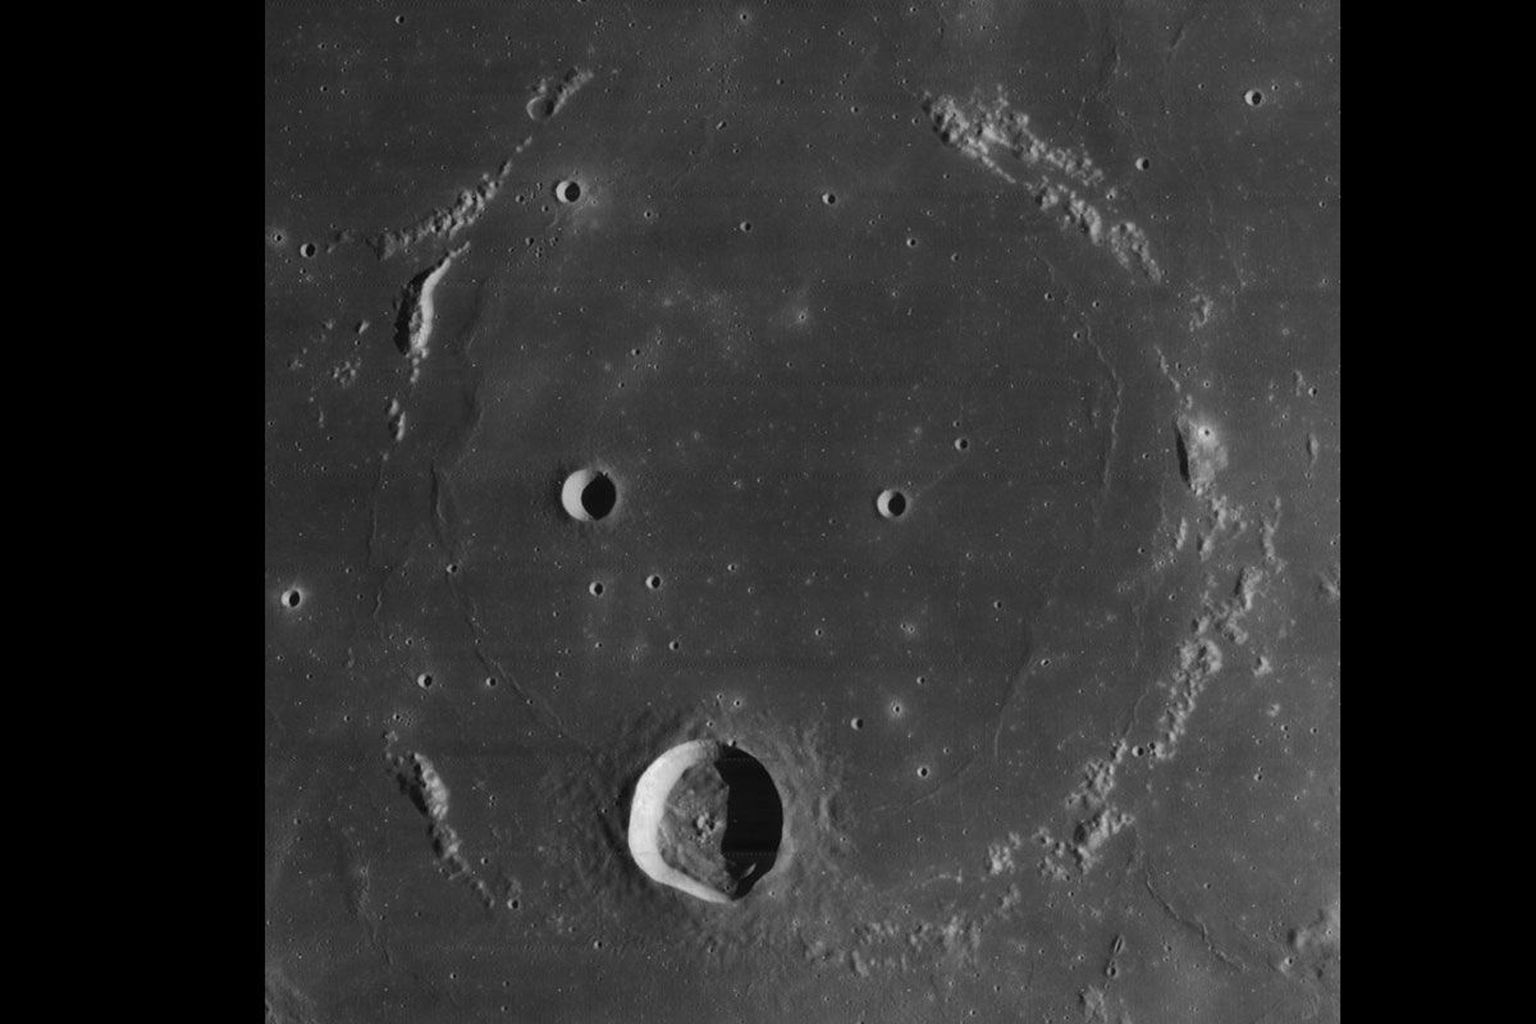 Kuu kraater